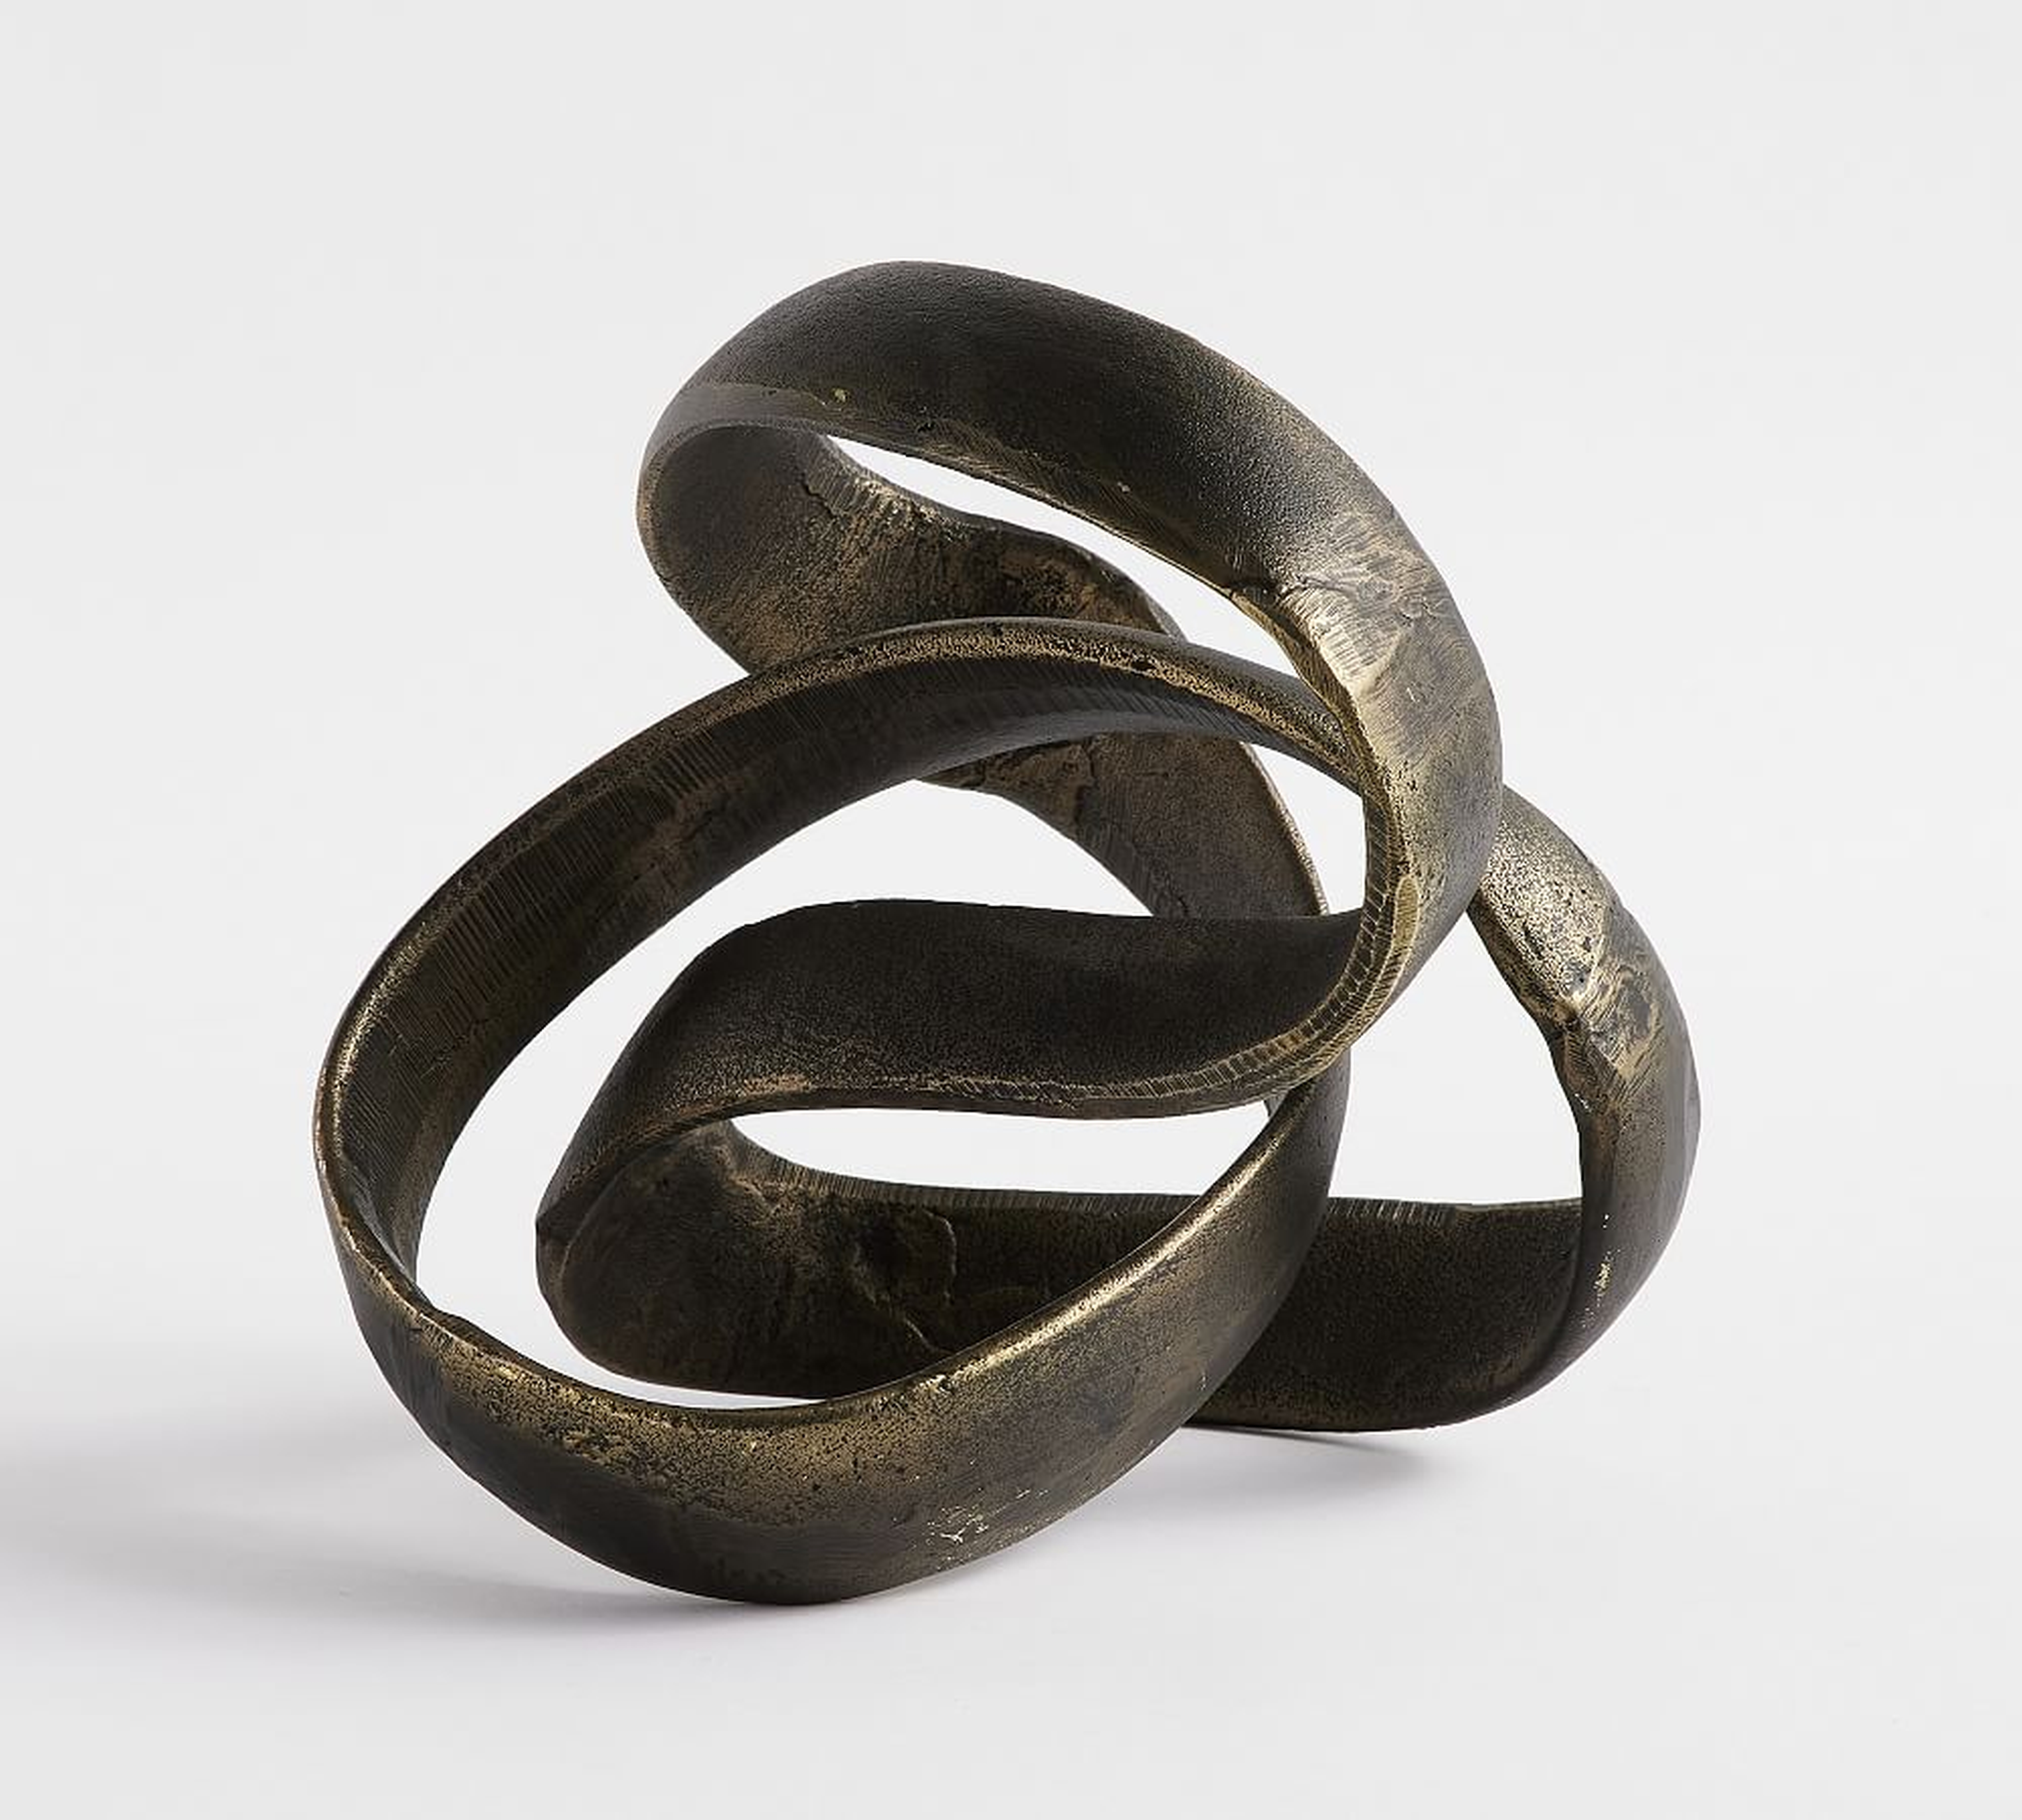 Bronze Ribbon Object, Medium - Pottery Barn